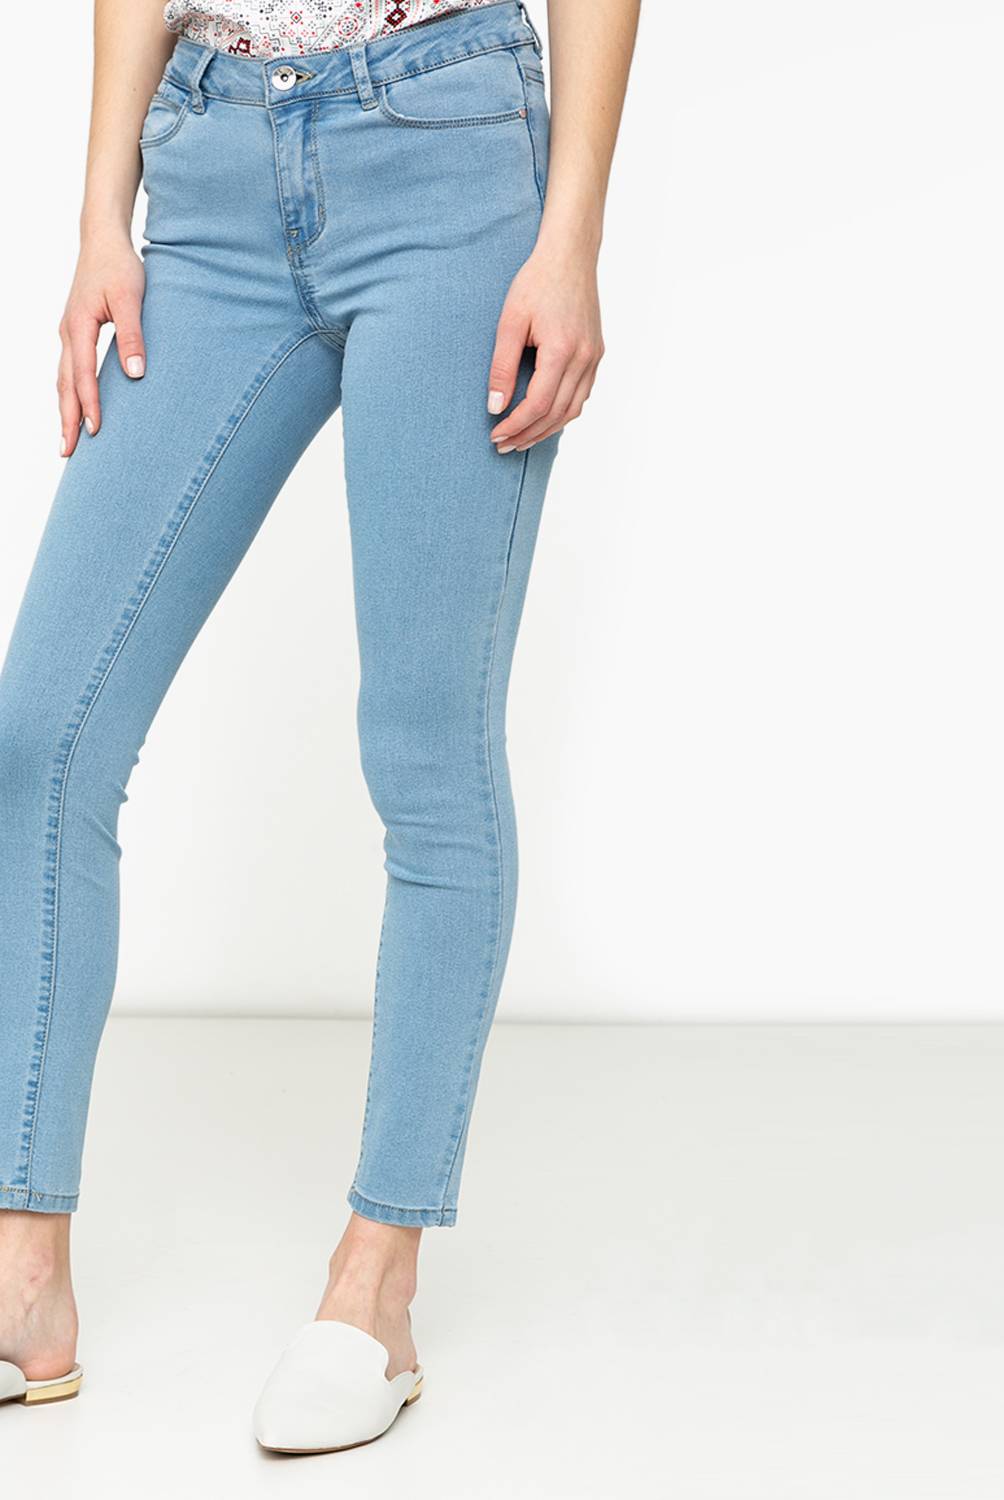 VERO MODA - Vero Moda Jeans Skinny Mujer Slim